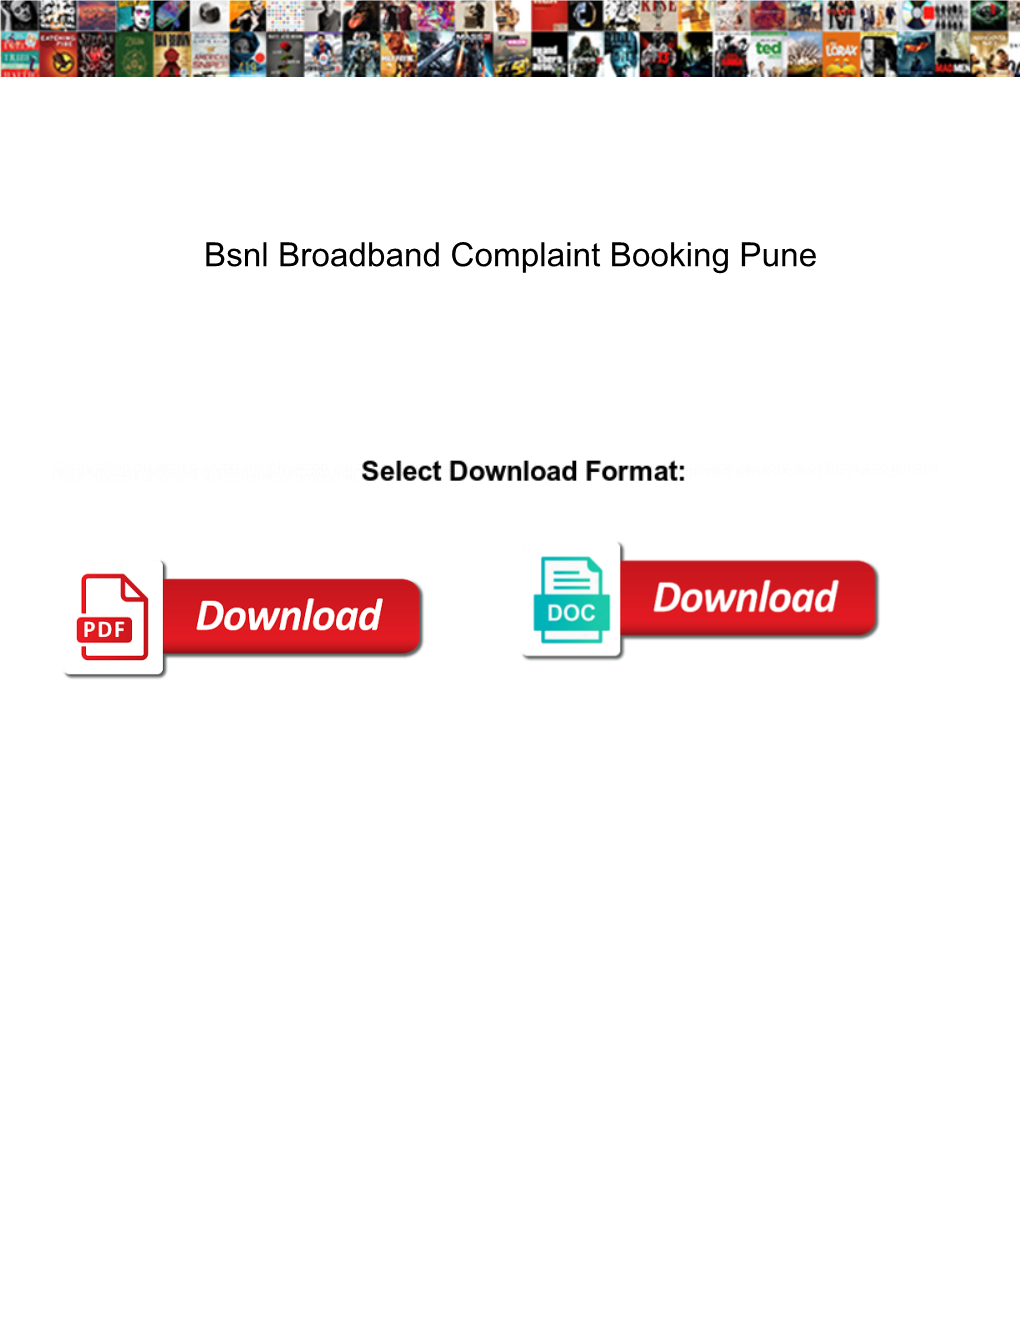 Bsnl Broadband Complaint Booking Pune